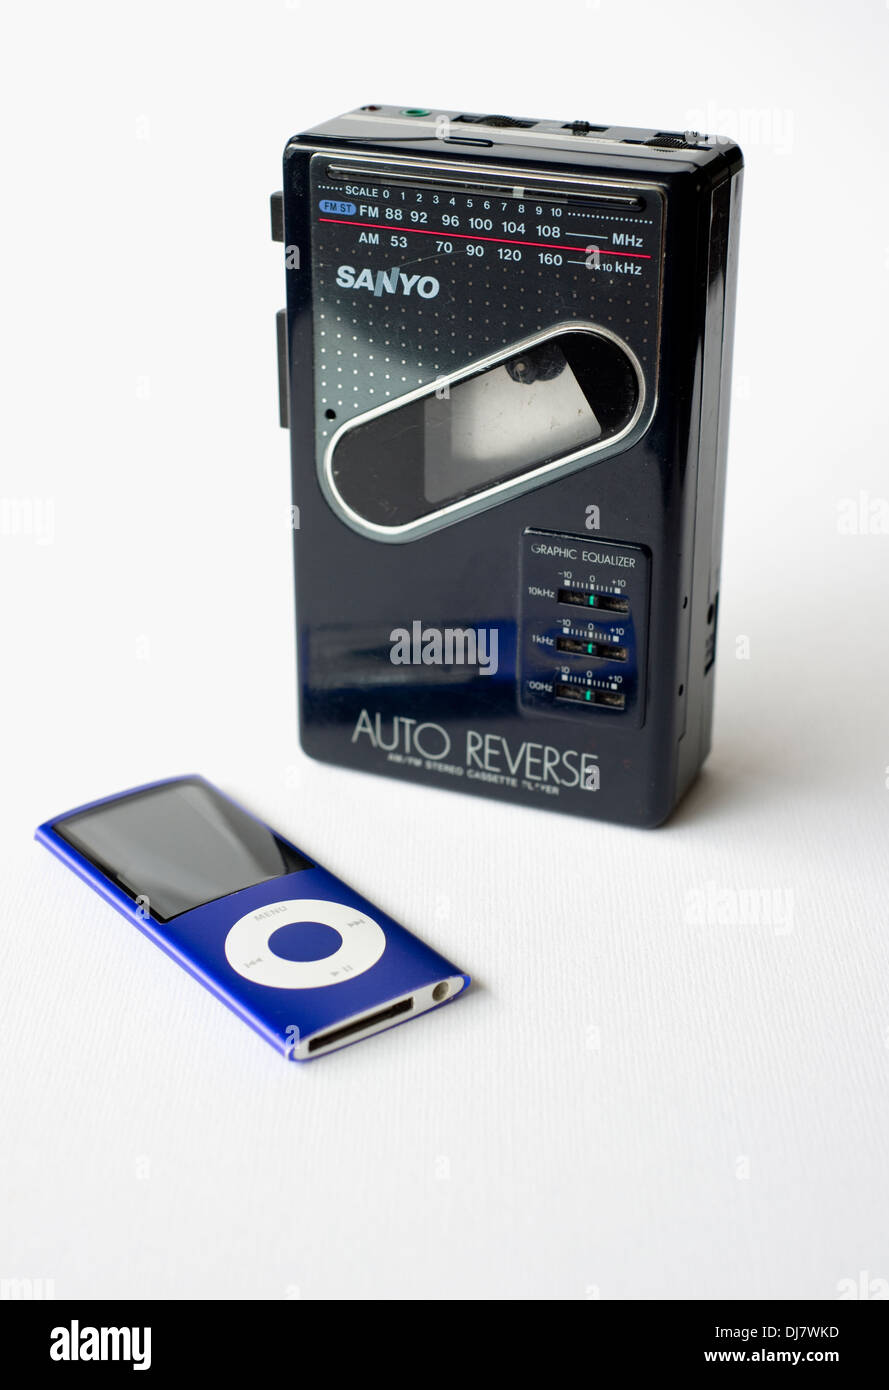 Un vecchio Sanyo WALKMAN a cassetta personale player con radio, a fianco di  una moderna Apple iPod Nano Foto stock - Alamy